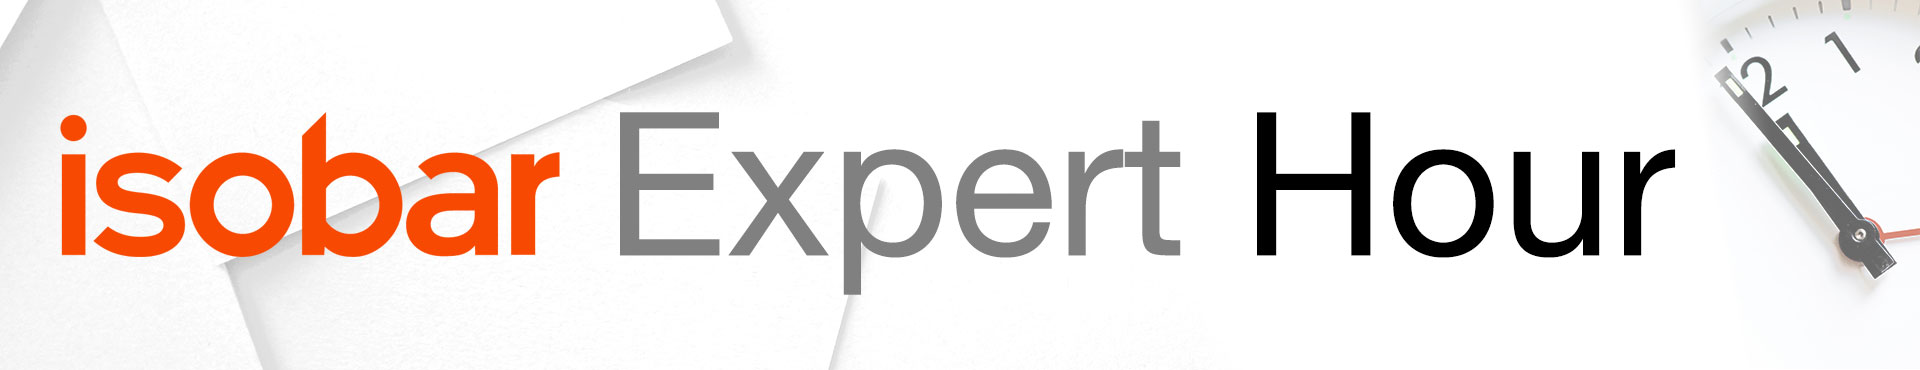 Expert Hour Banner